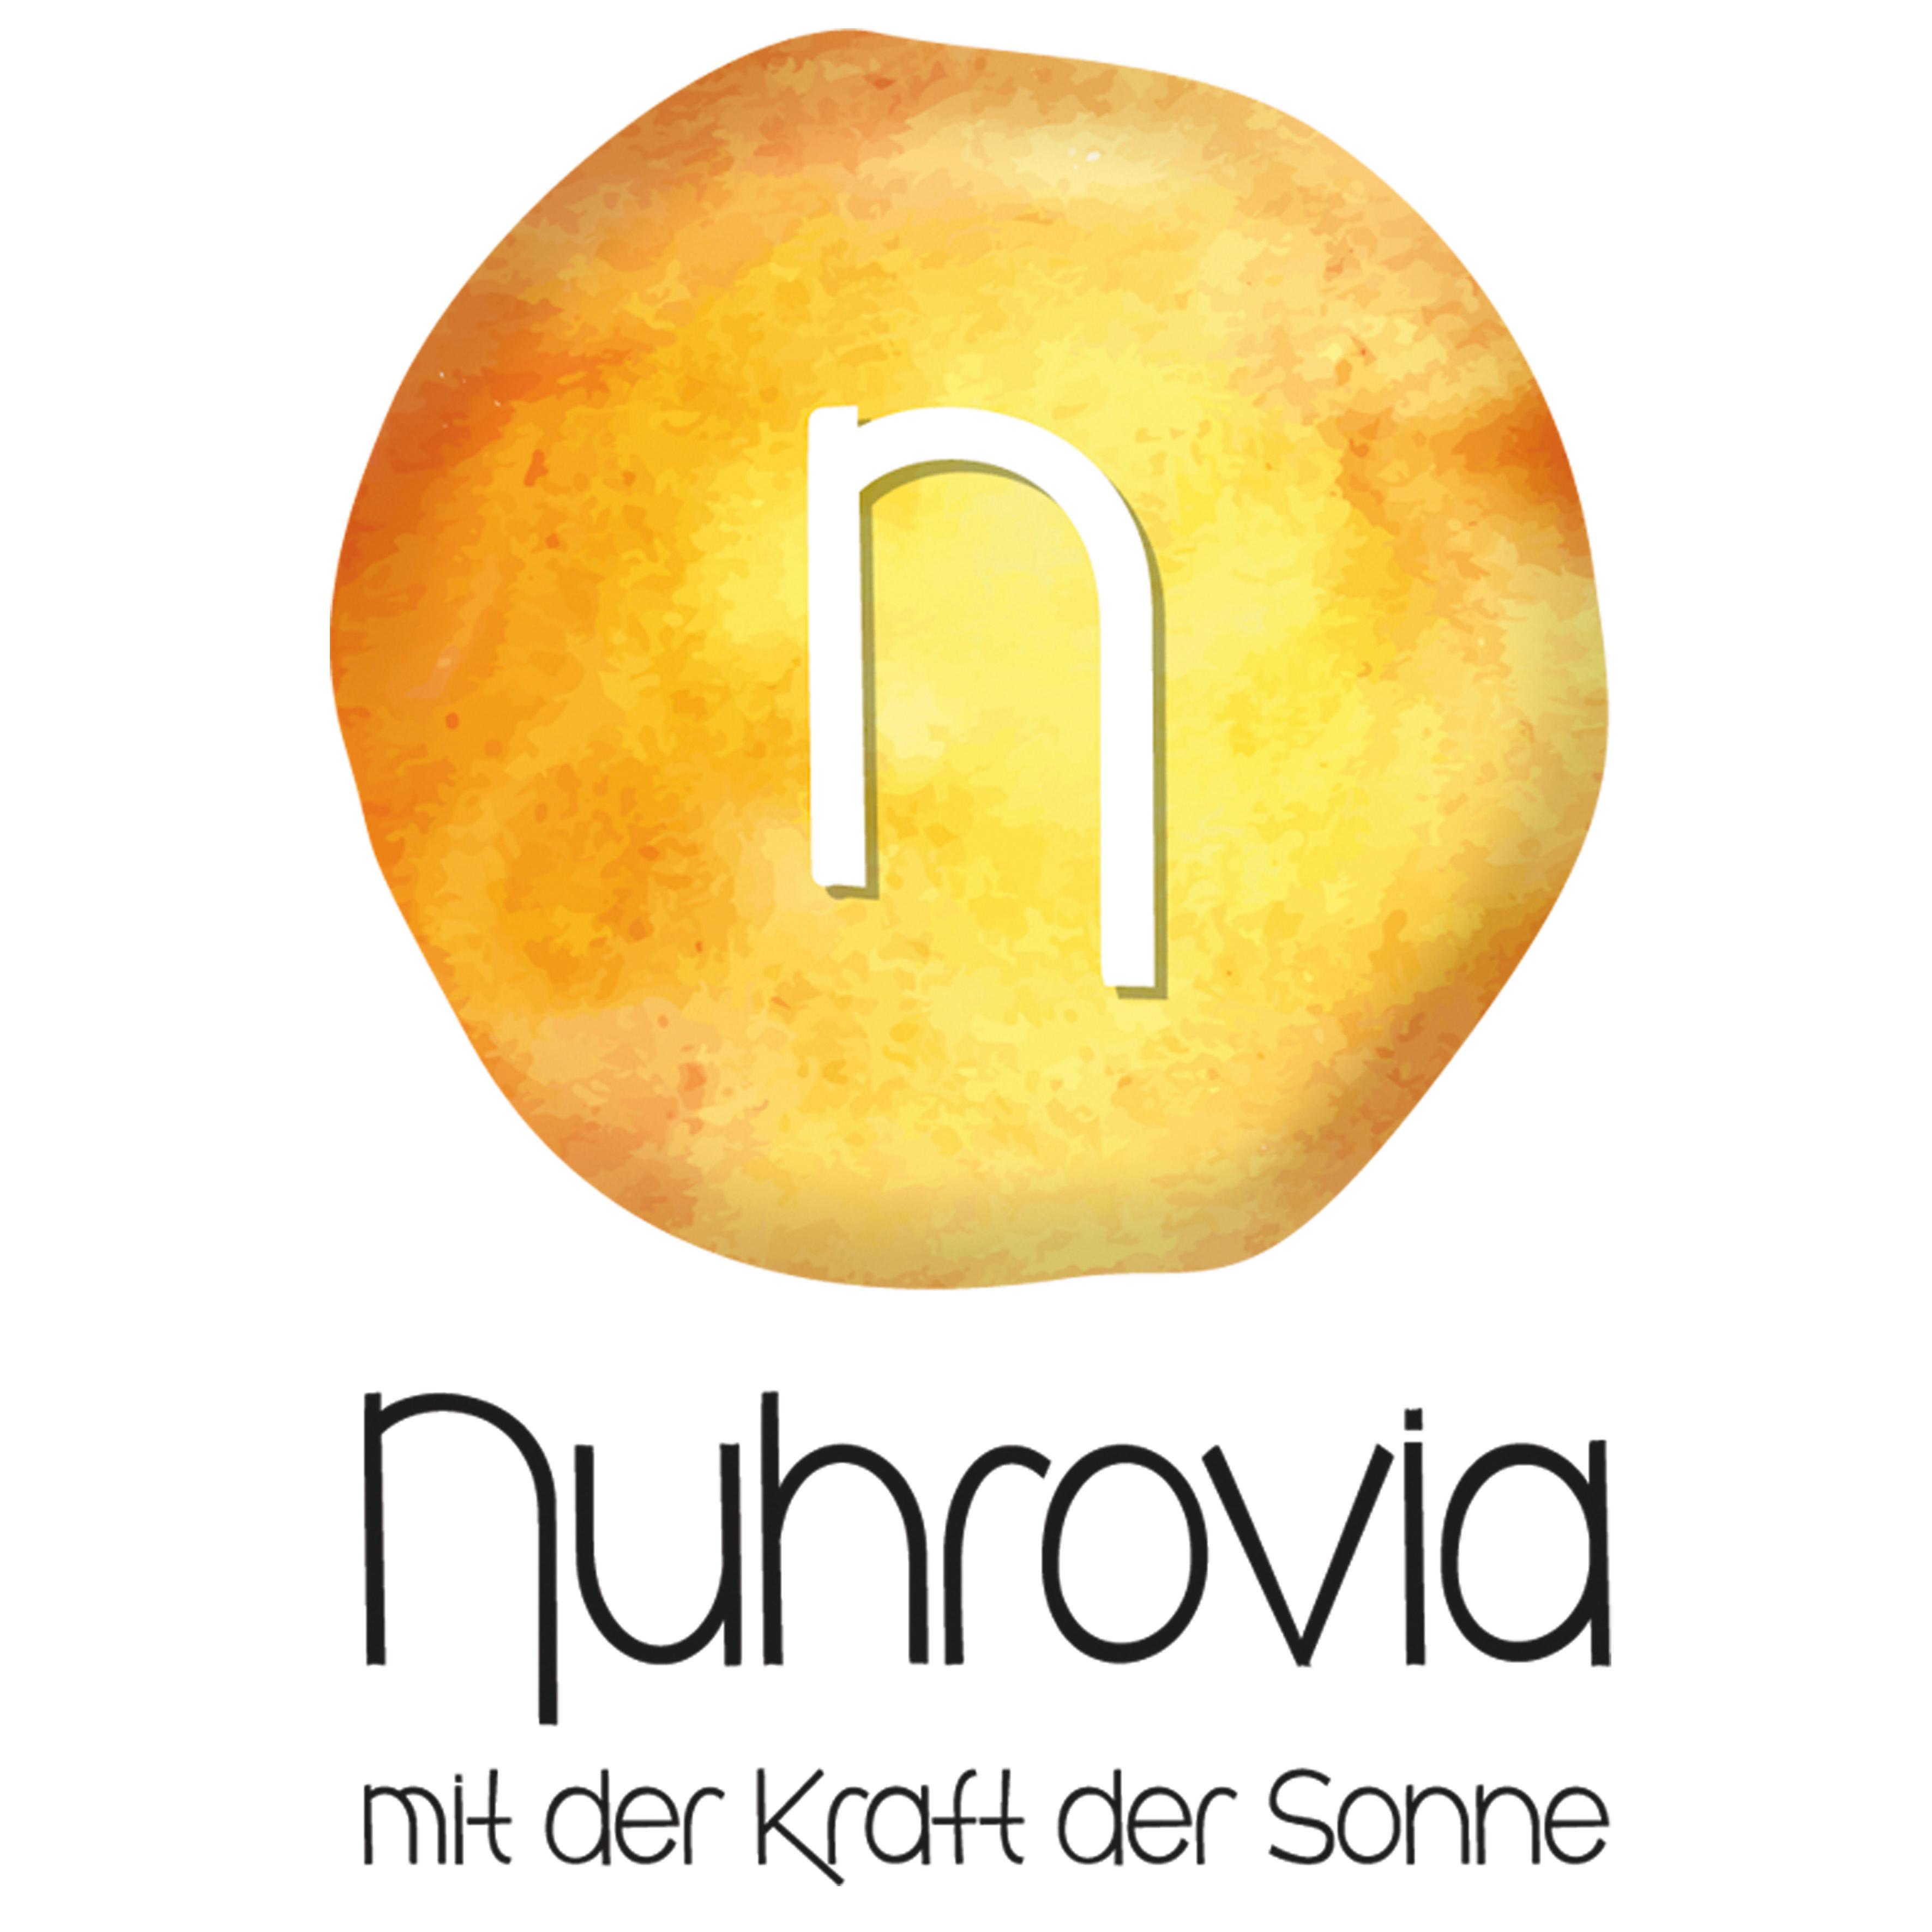 Nuhrovia – Naturessenzen mit der Kraft der Sonne